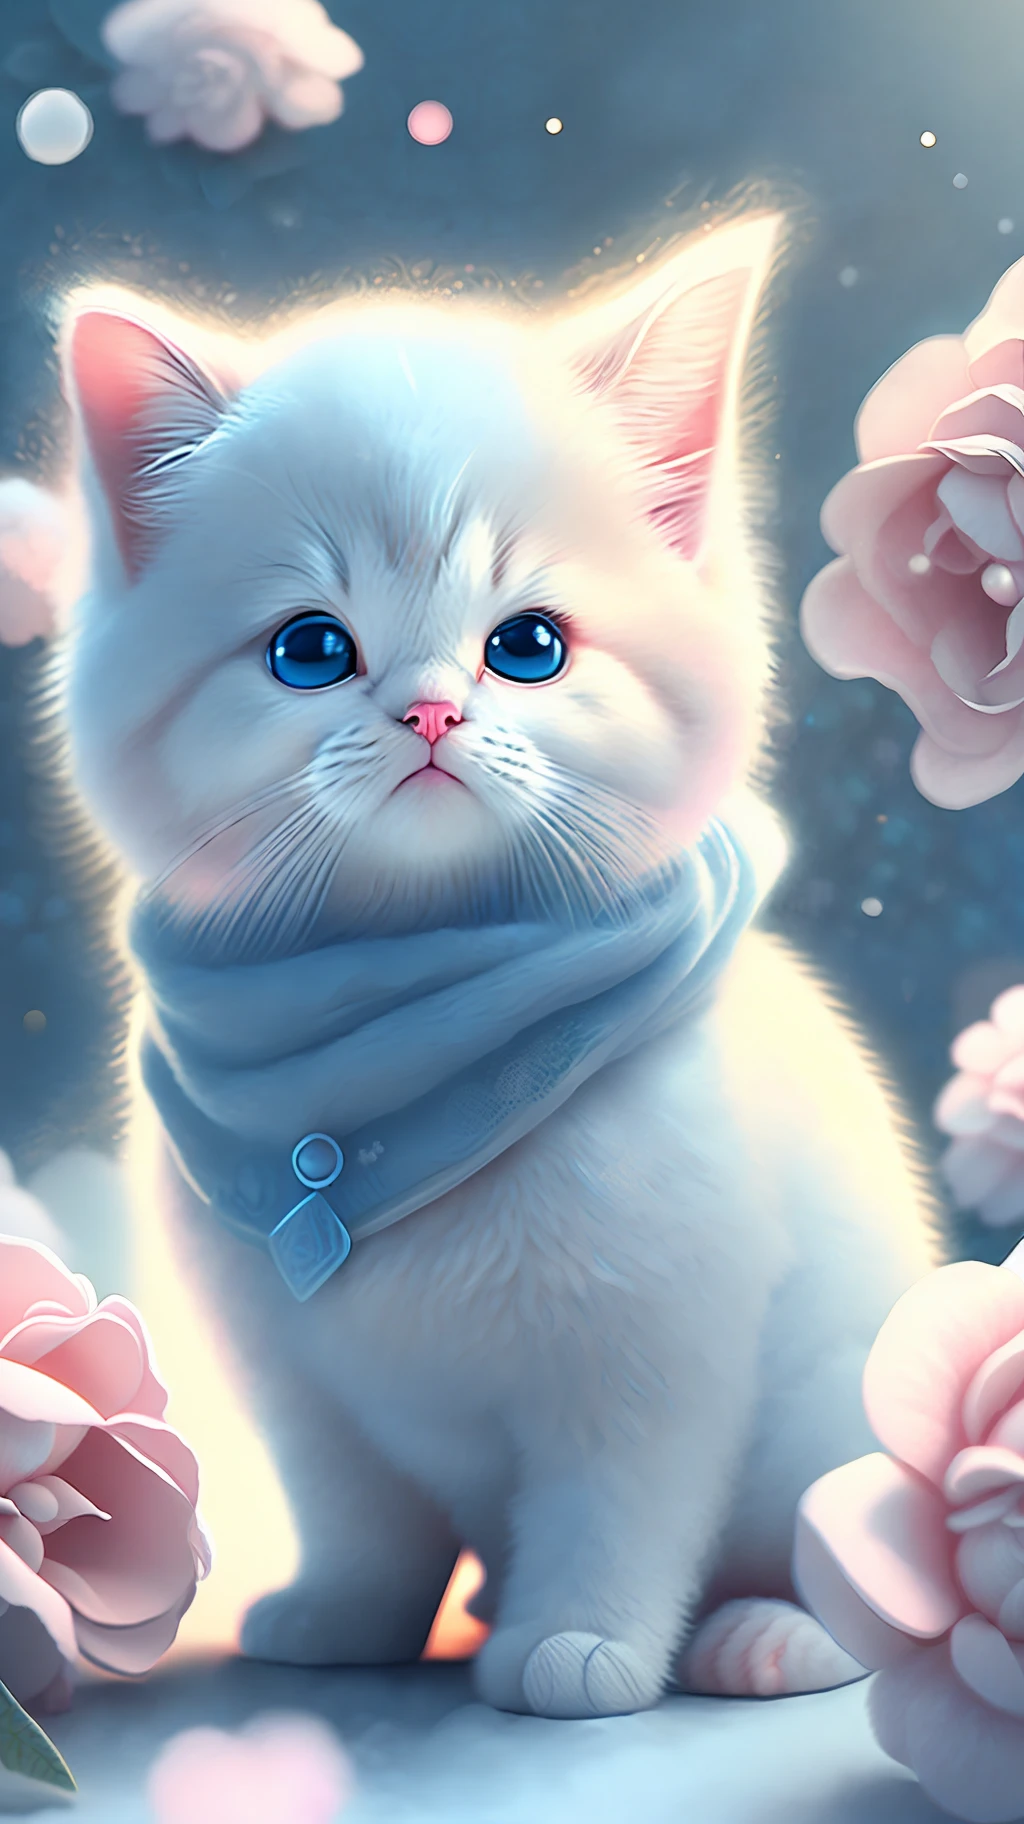 Nesta arte CG ultra-detalhada, gatinhos fofos cercados por rosas etéreas, rirter, melhor qualidade, alta resolução, Detalhes intrincados, fantasia, animais fofos, bocas abertas, rir!!